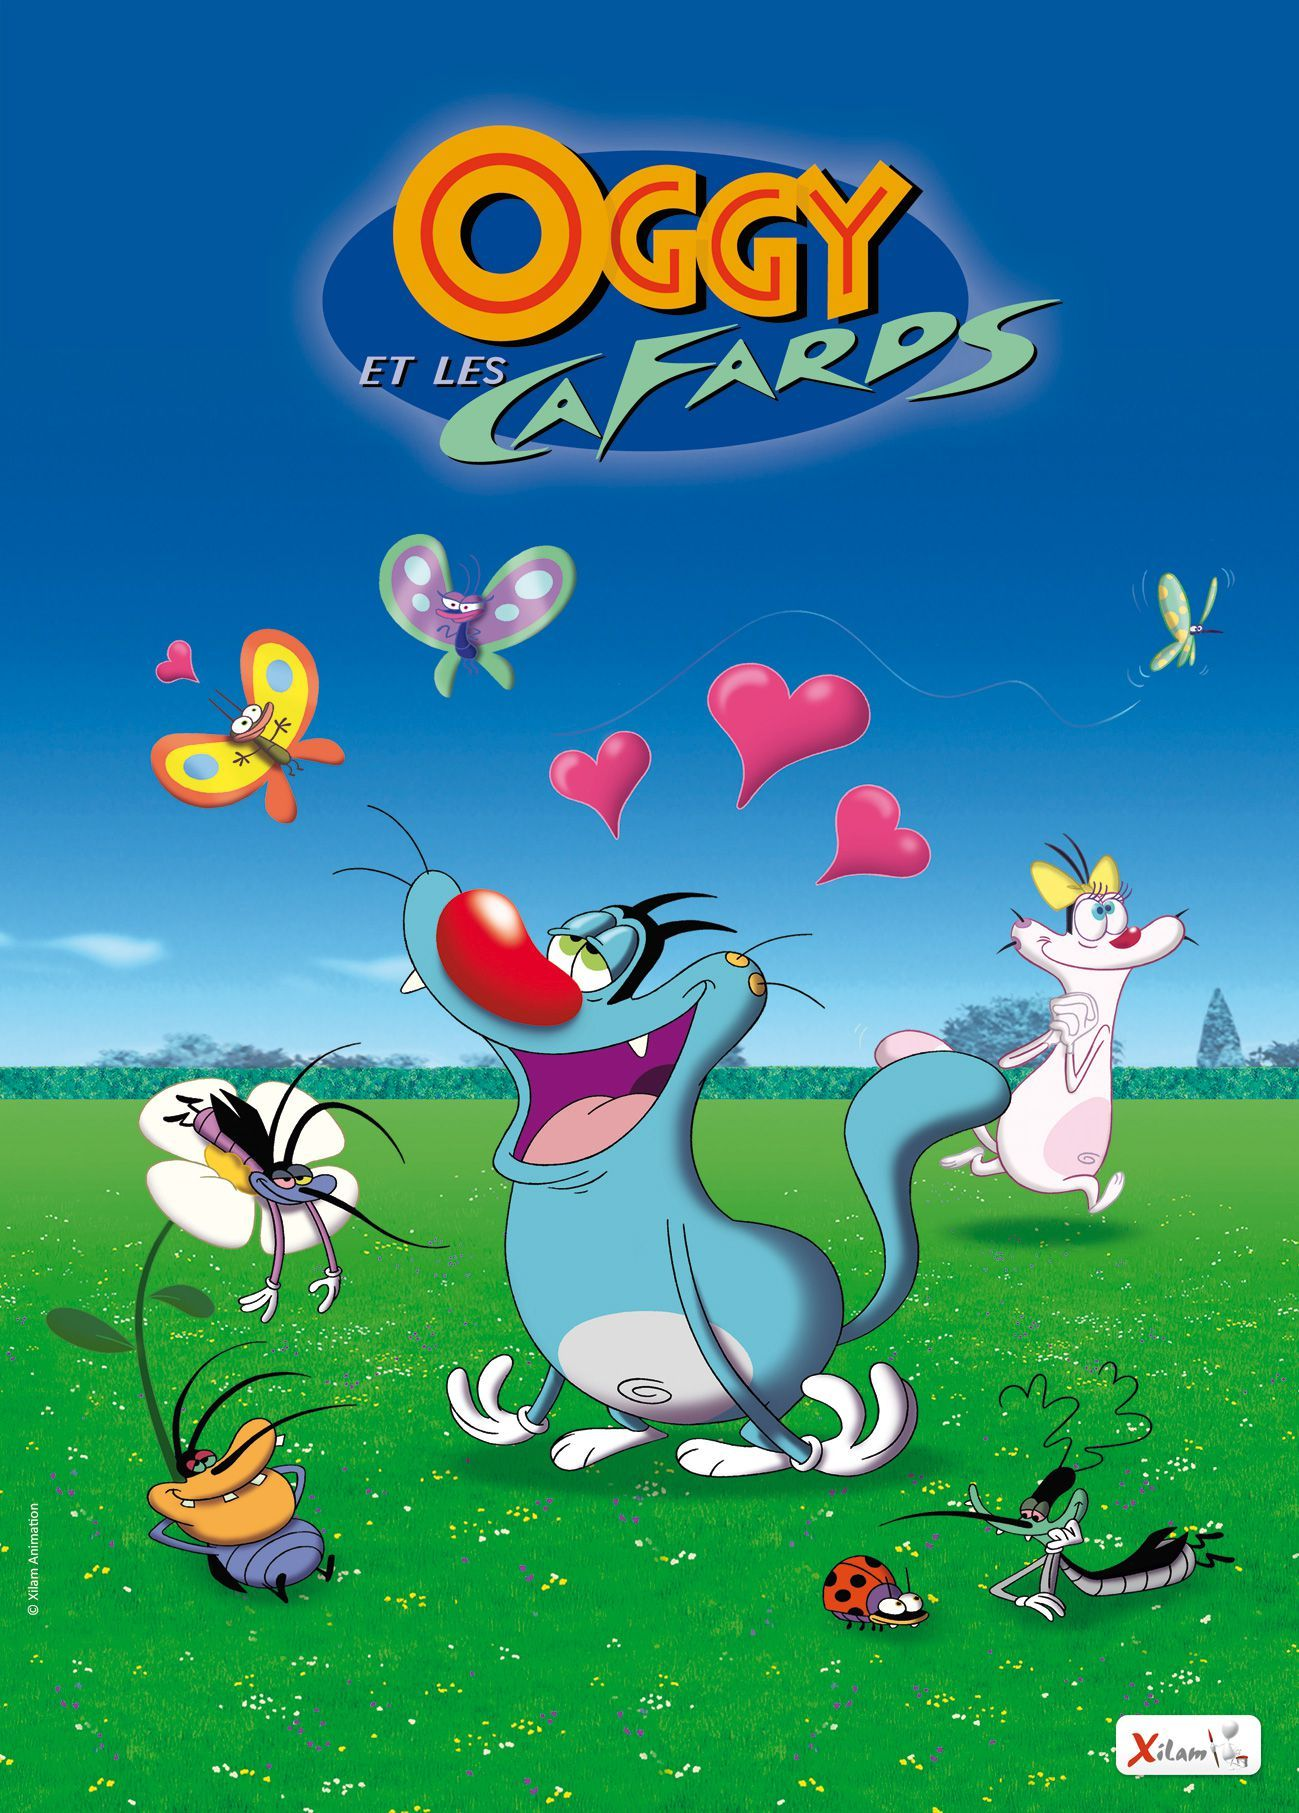 Phim hoạt hình nổi tiếng Oggy and the Cockroaches được sản xuất tại Việt Nam